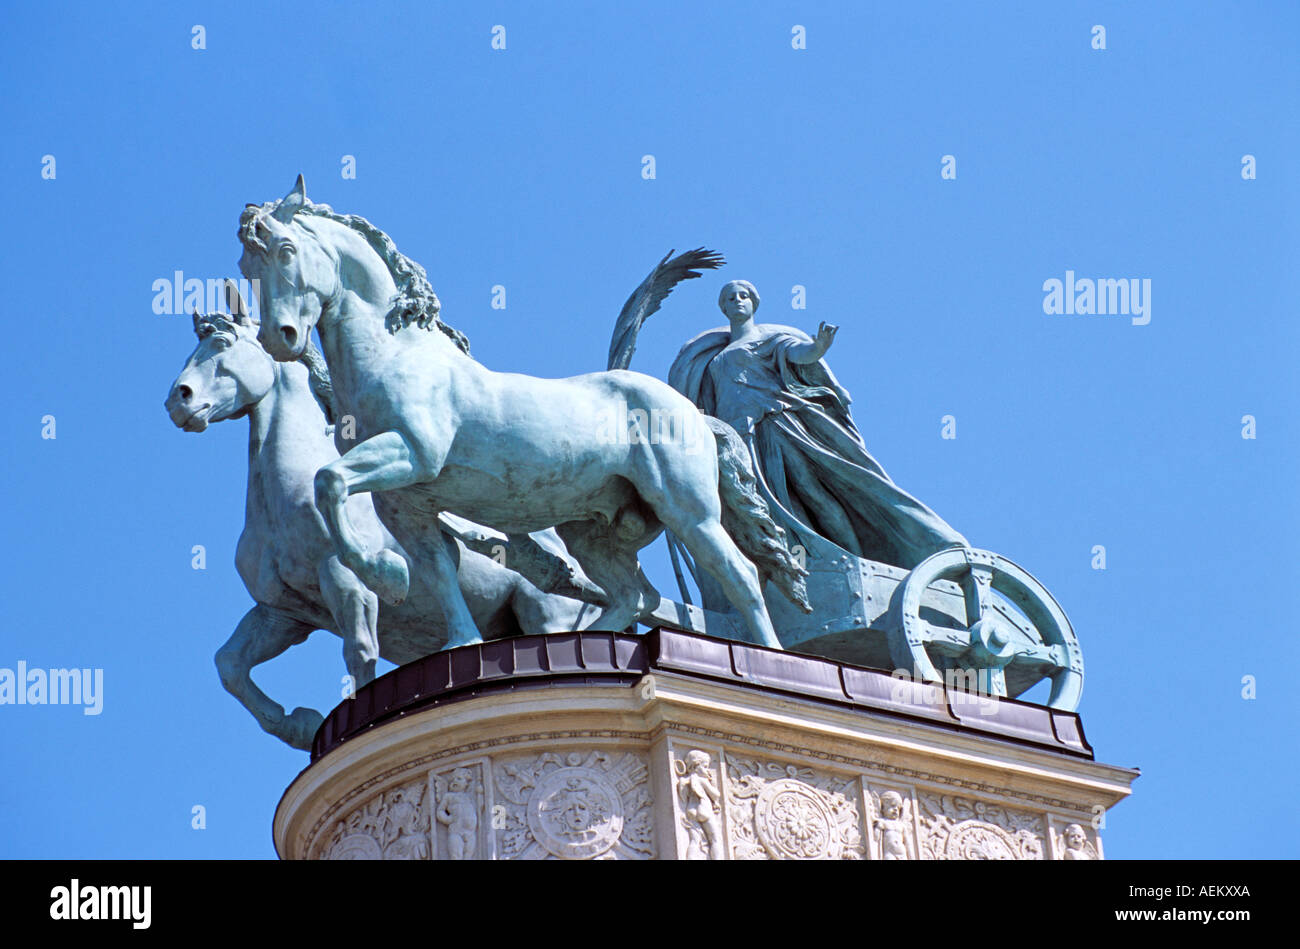 Estatua en la parte superior de la columnata, parte del Monumento del Milenio, Plaza de los Héroes, Budapest, Hungría Foto de stock